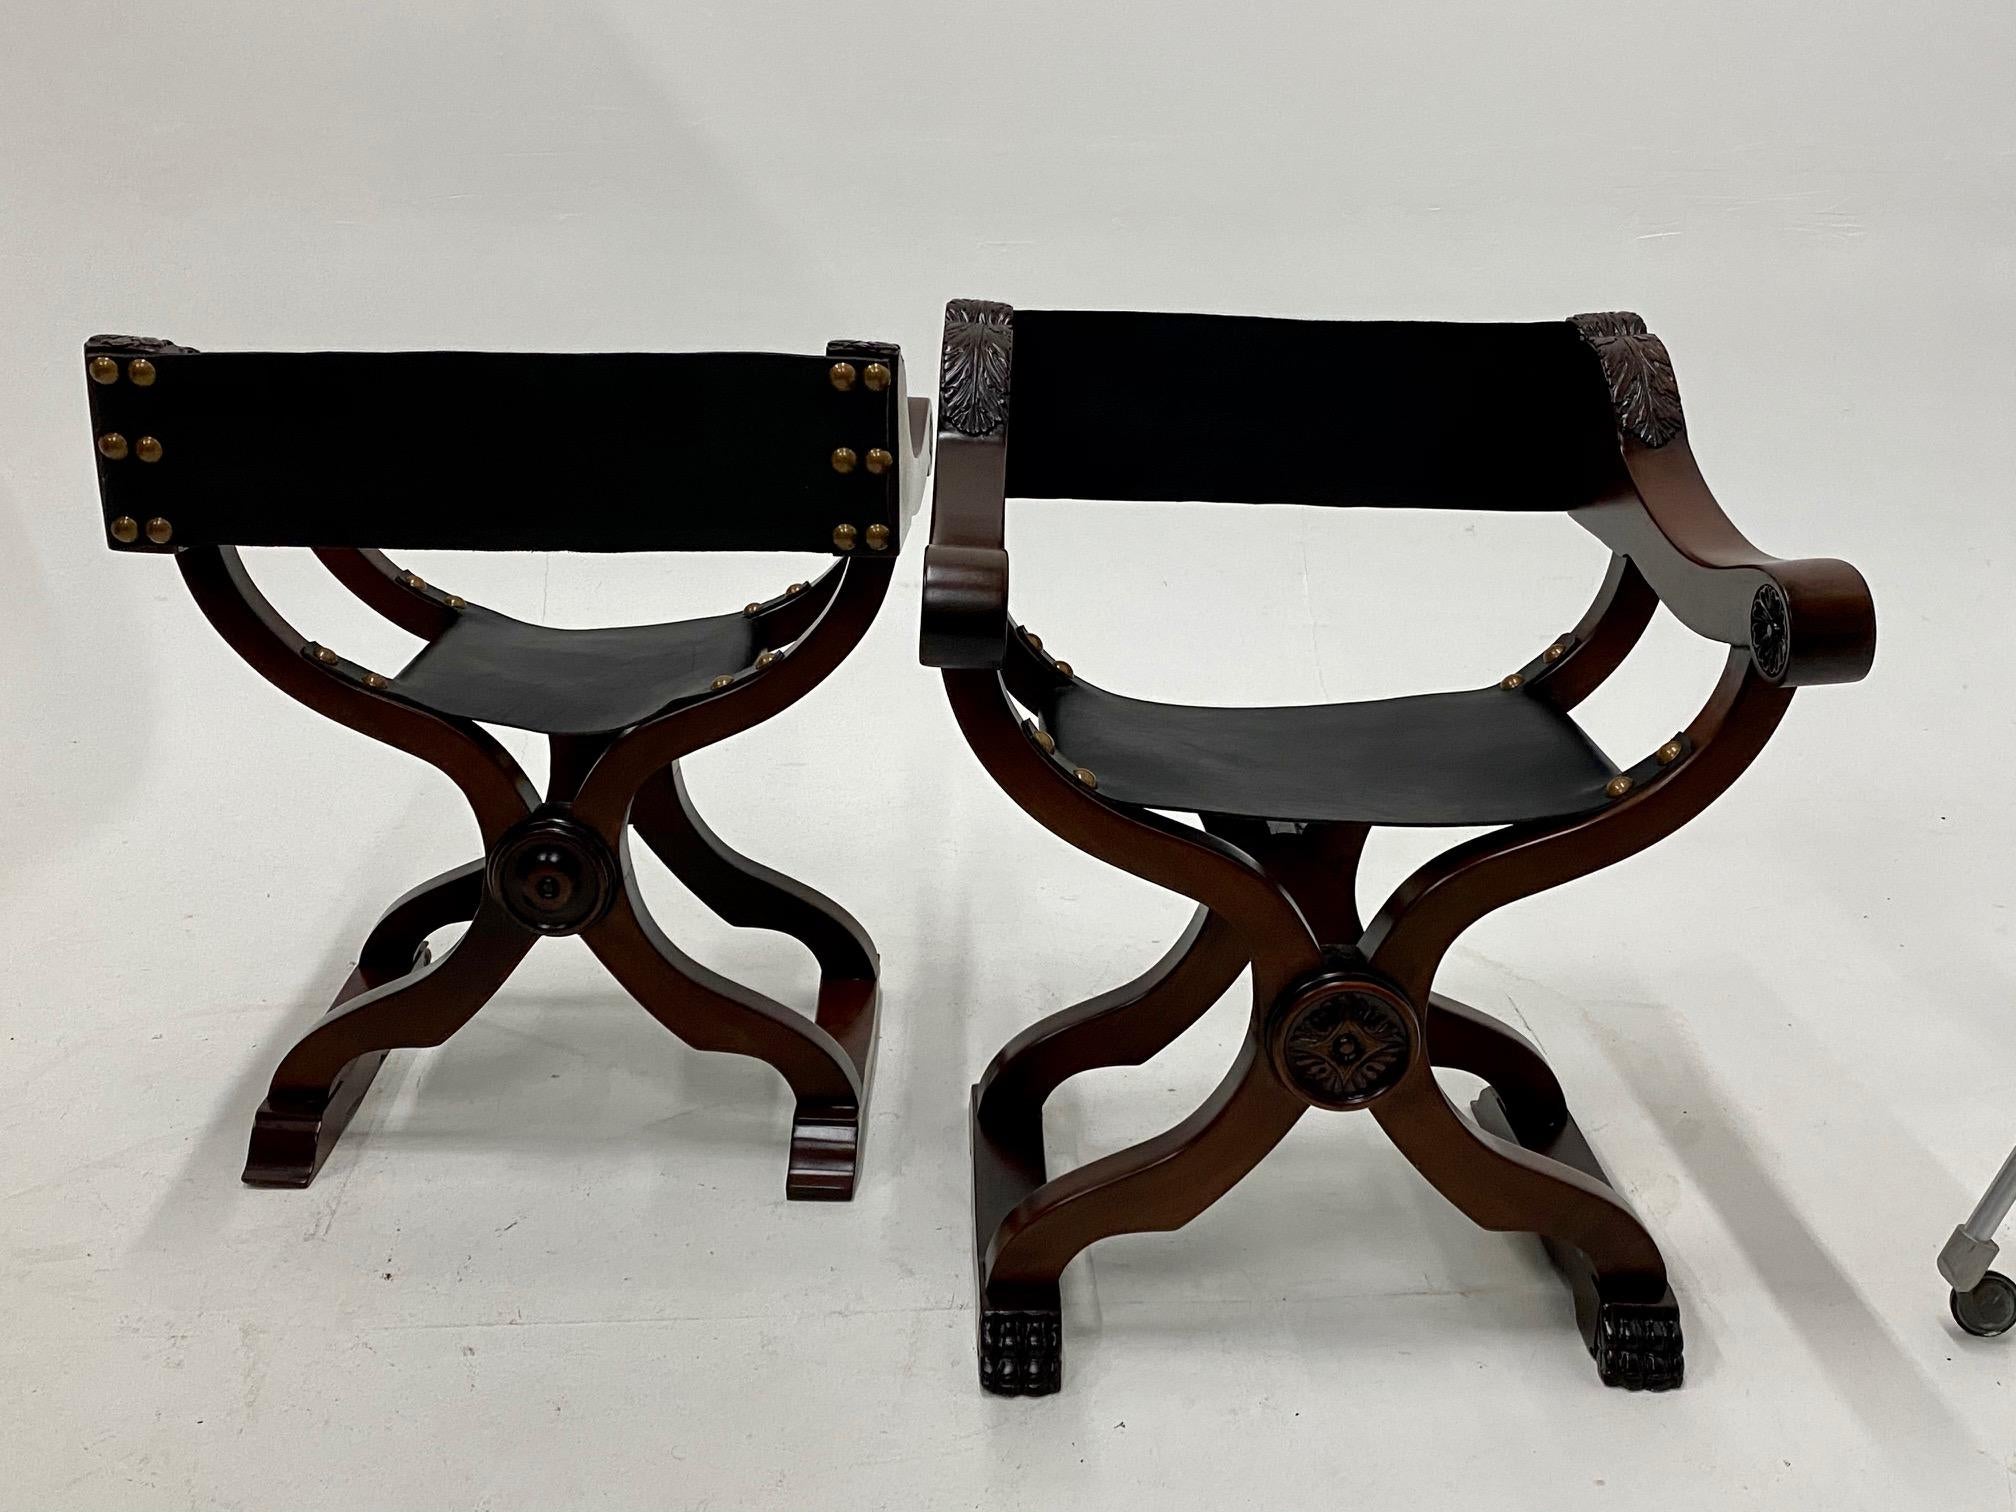 Atemberaubendes Paar Savaranola-Stühle im Barockstil mit Rahmen aus reichem Eschenholz und geschmeidigen, neu gepolsterten Sitzen aus schwarzem Leder mit Messingnagelköpfen.